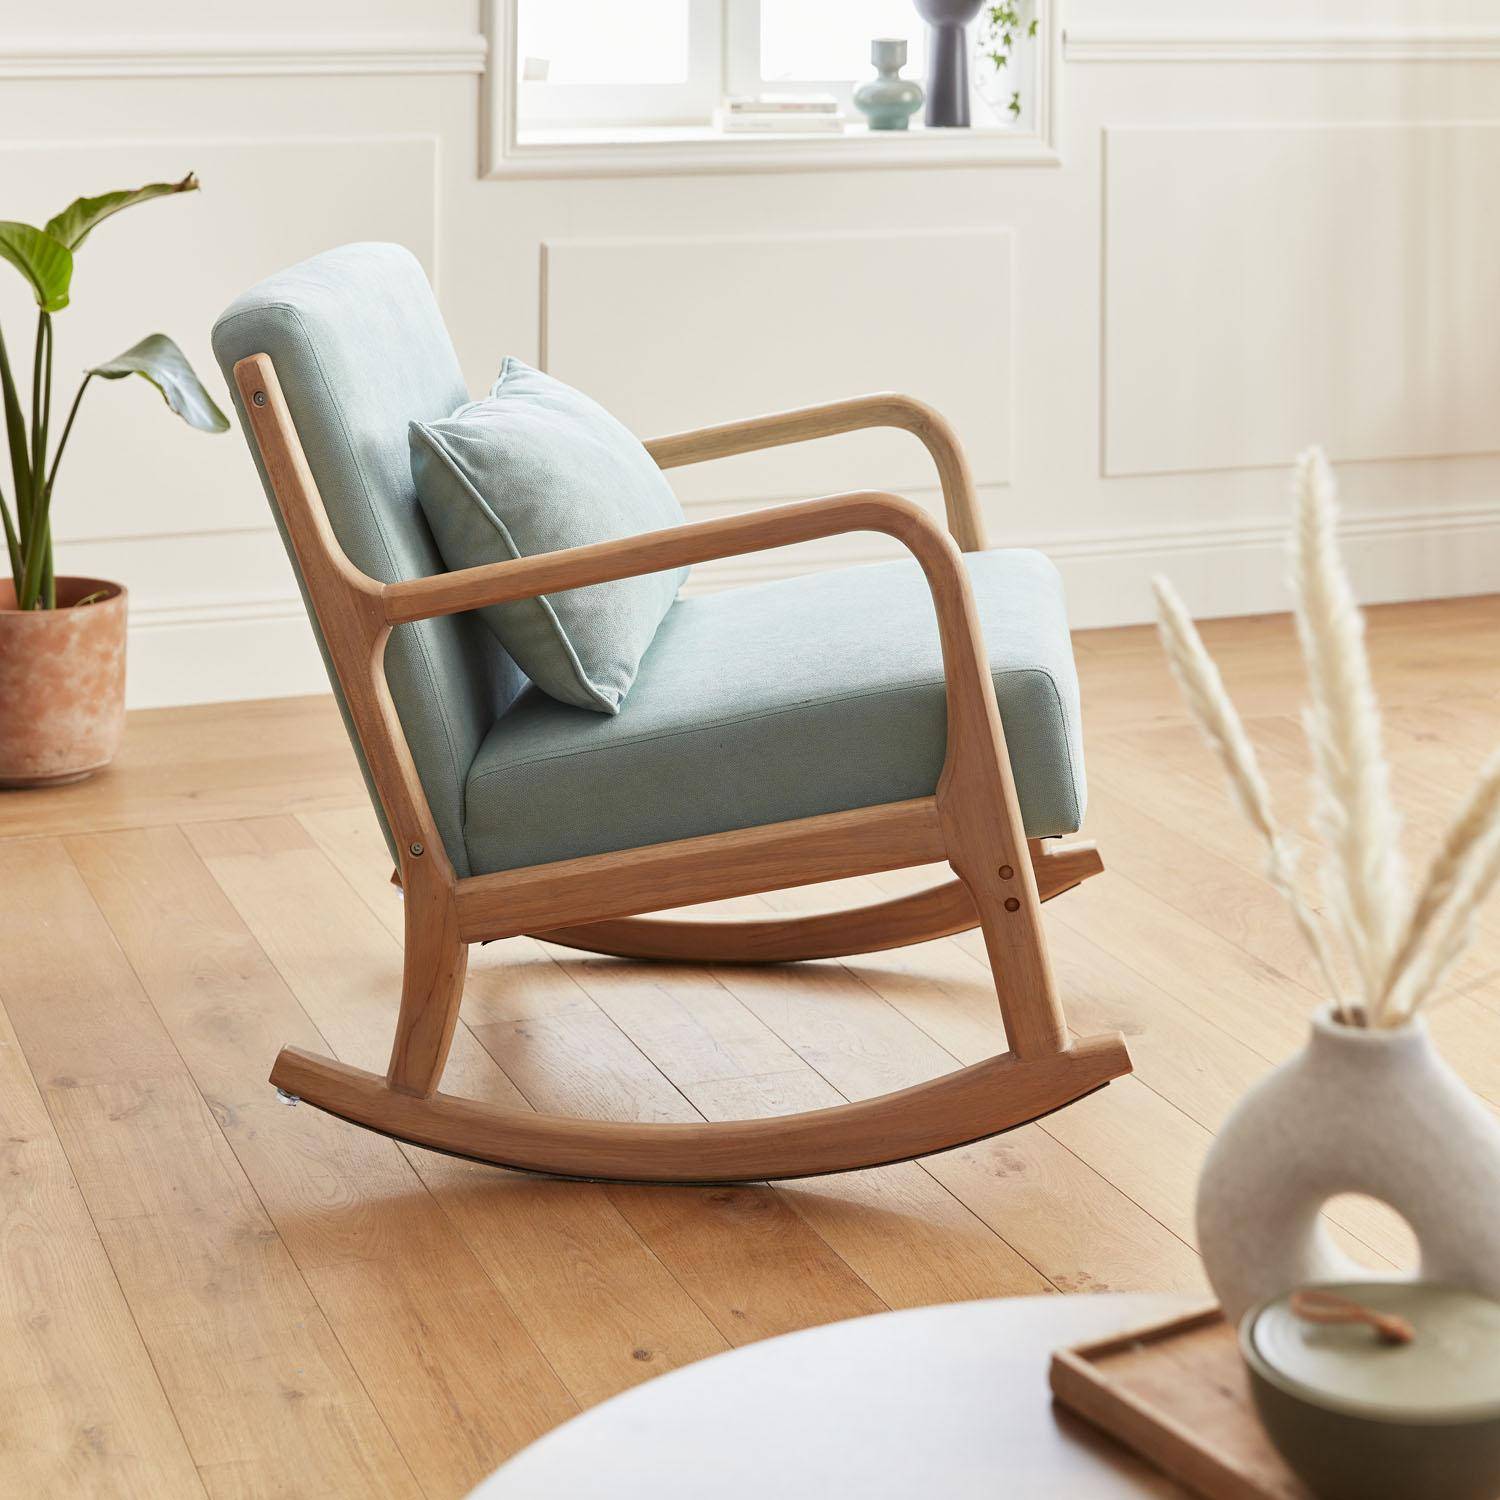 Sedia a dondolo di design in legno e tessuto, 1 posto, sedia a dondolo scandinava, verde acqua Photo2